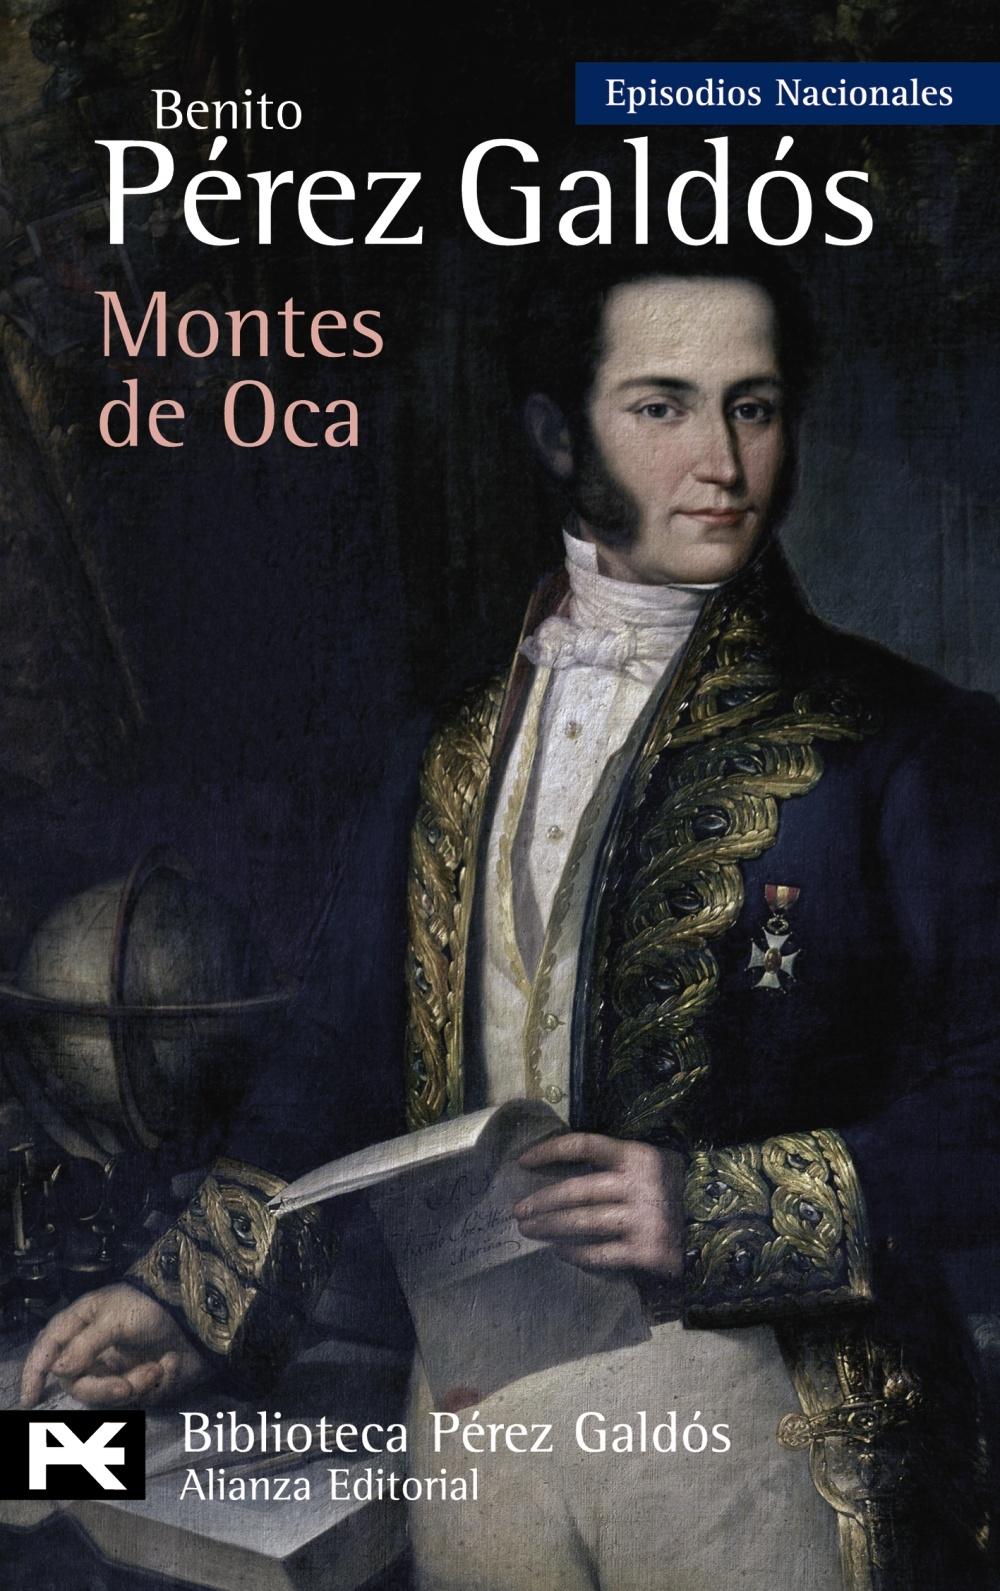 Montes de Oca "Episodios Nacionales, 28 / Tercera Serie"